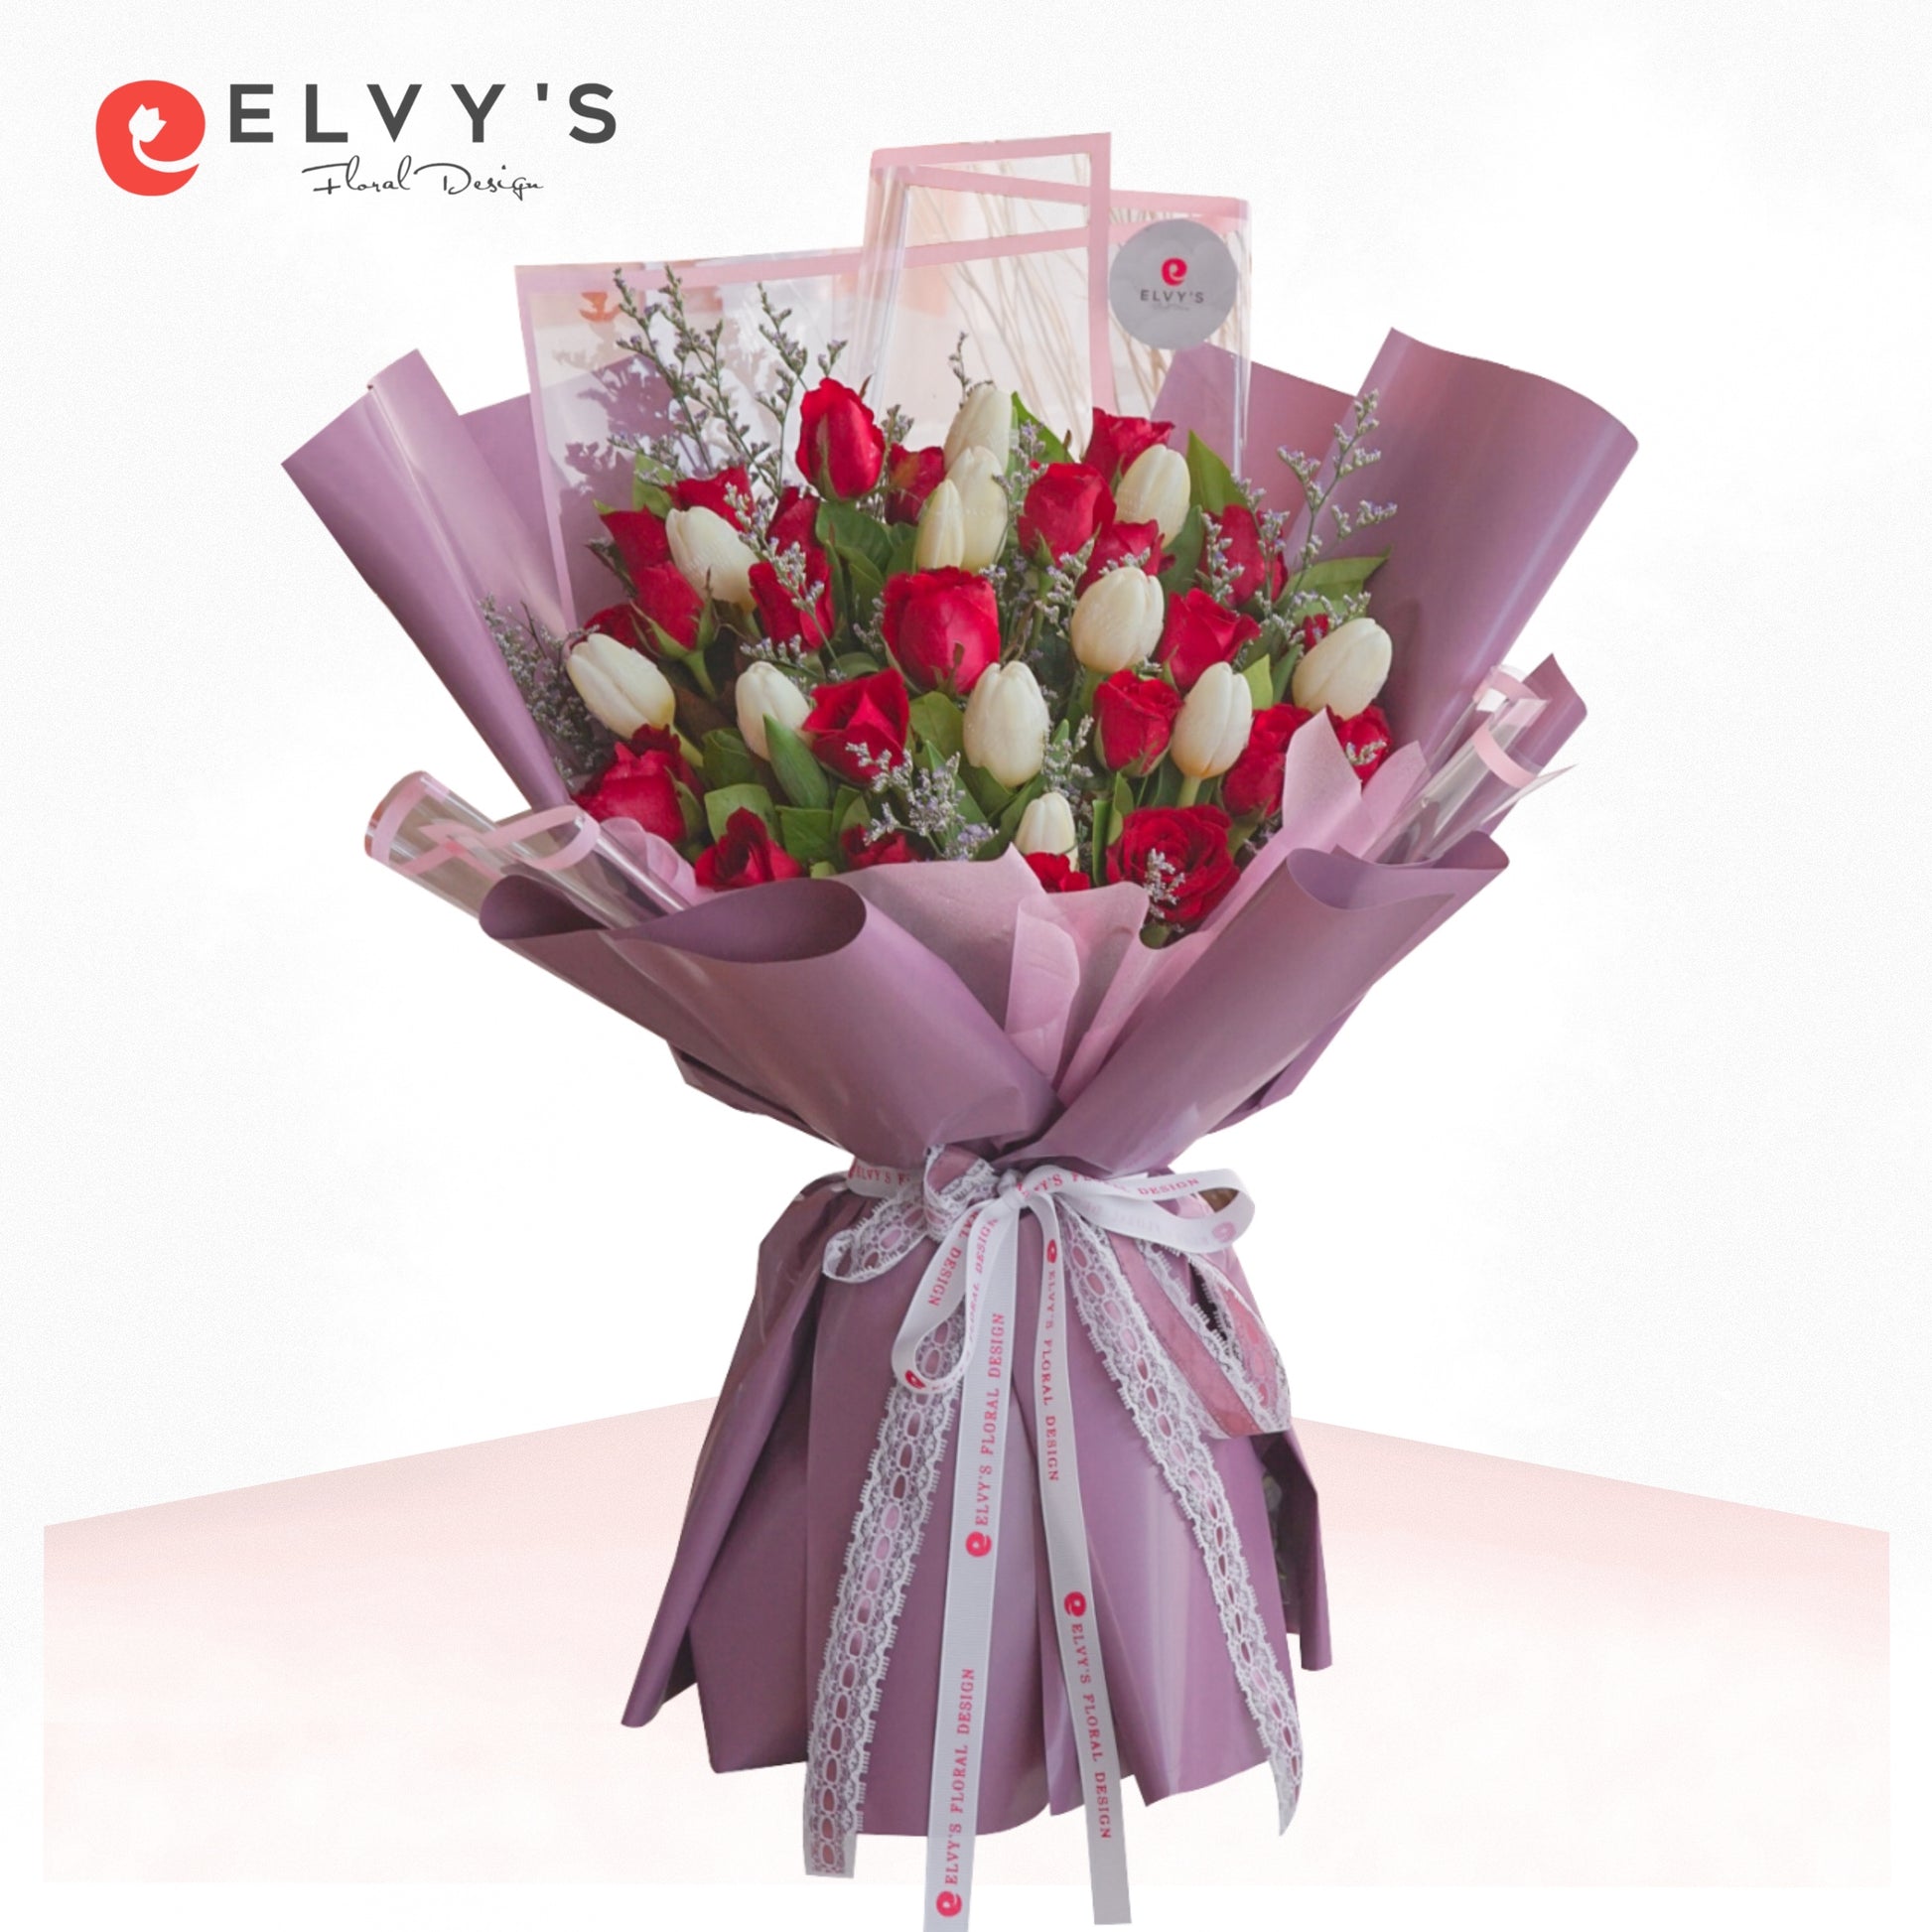 Iconic Flowers Bouquet | Elvy's Floral Design